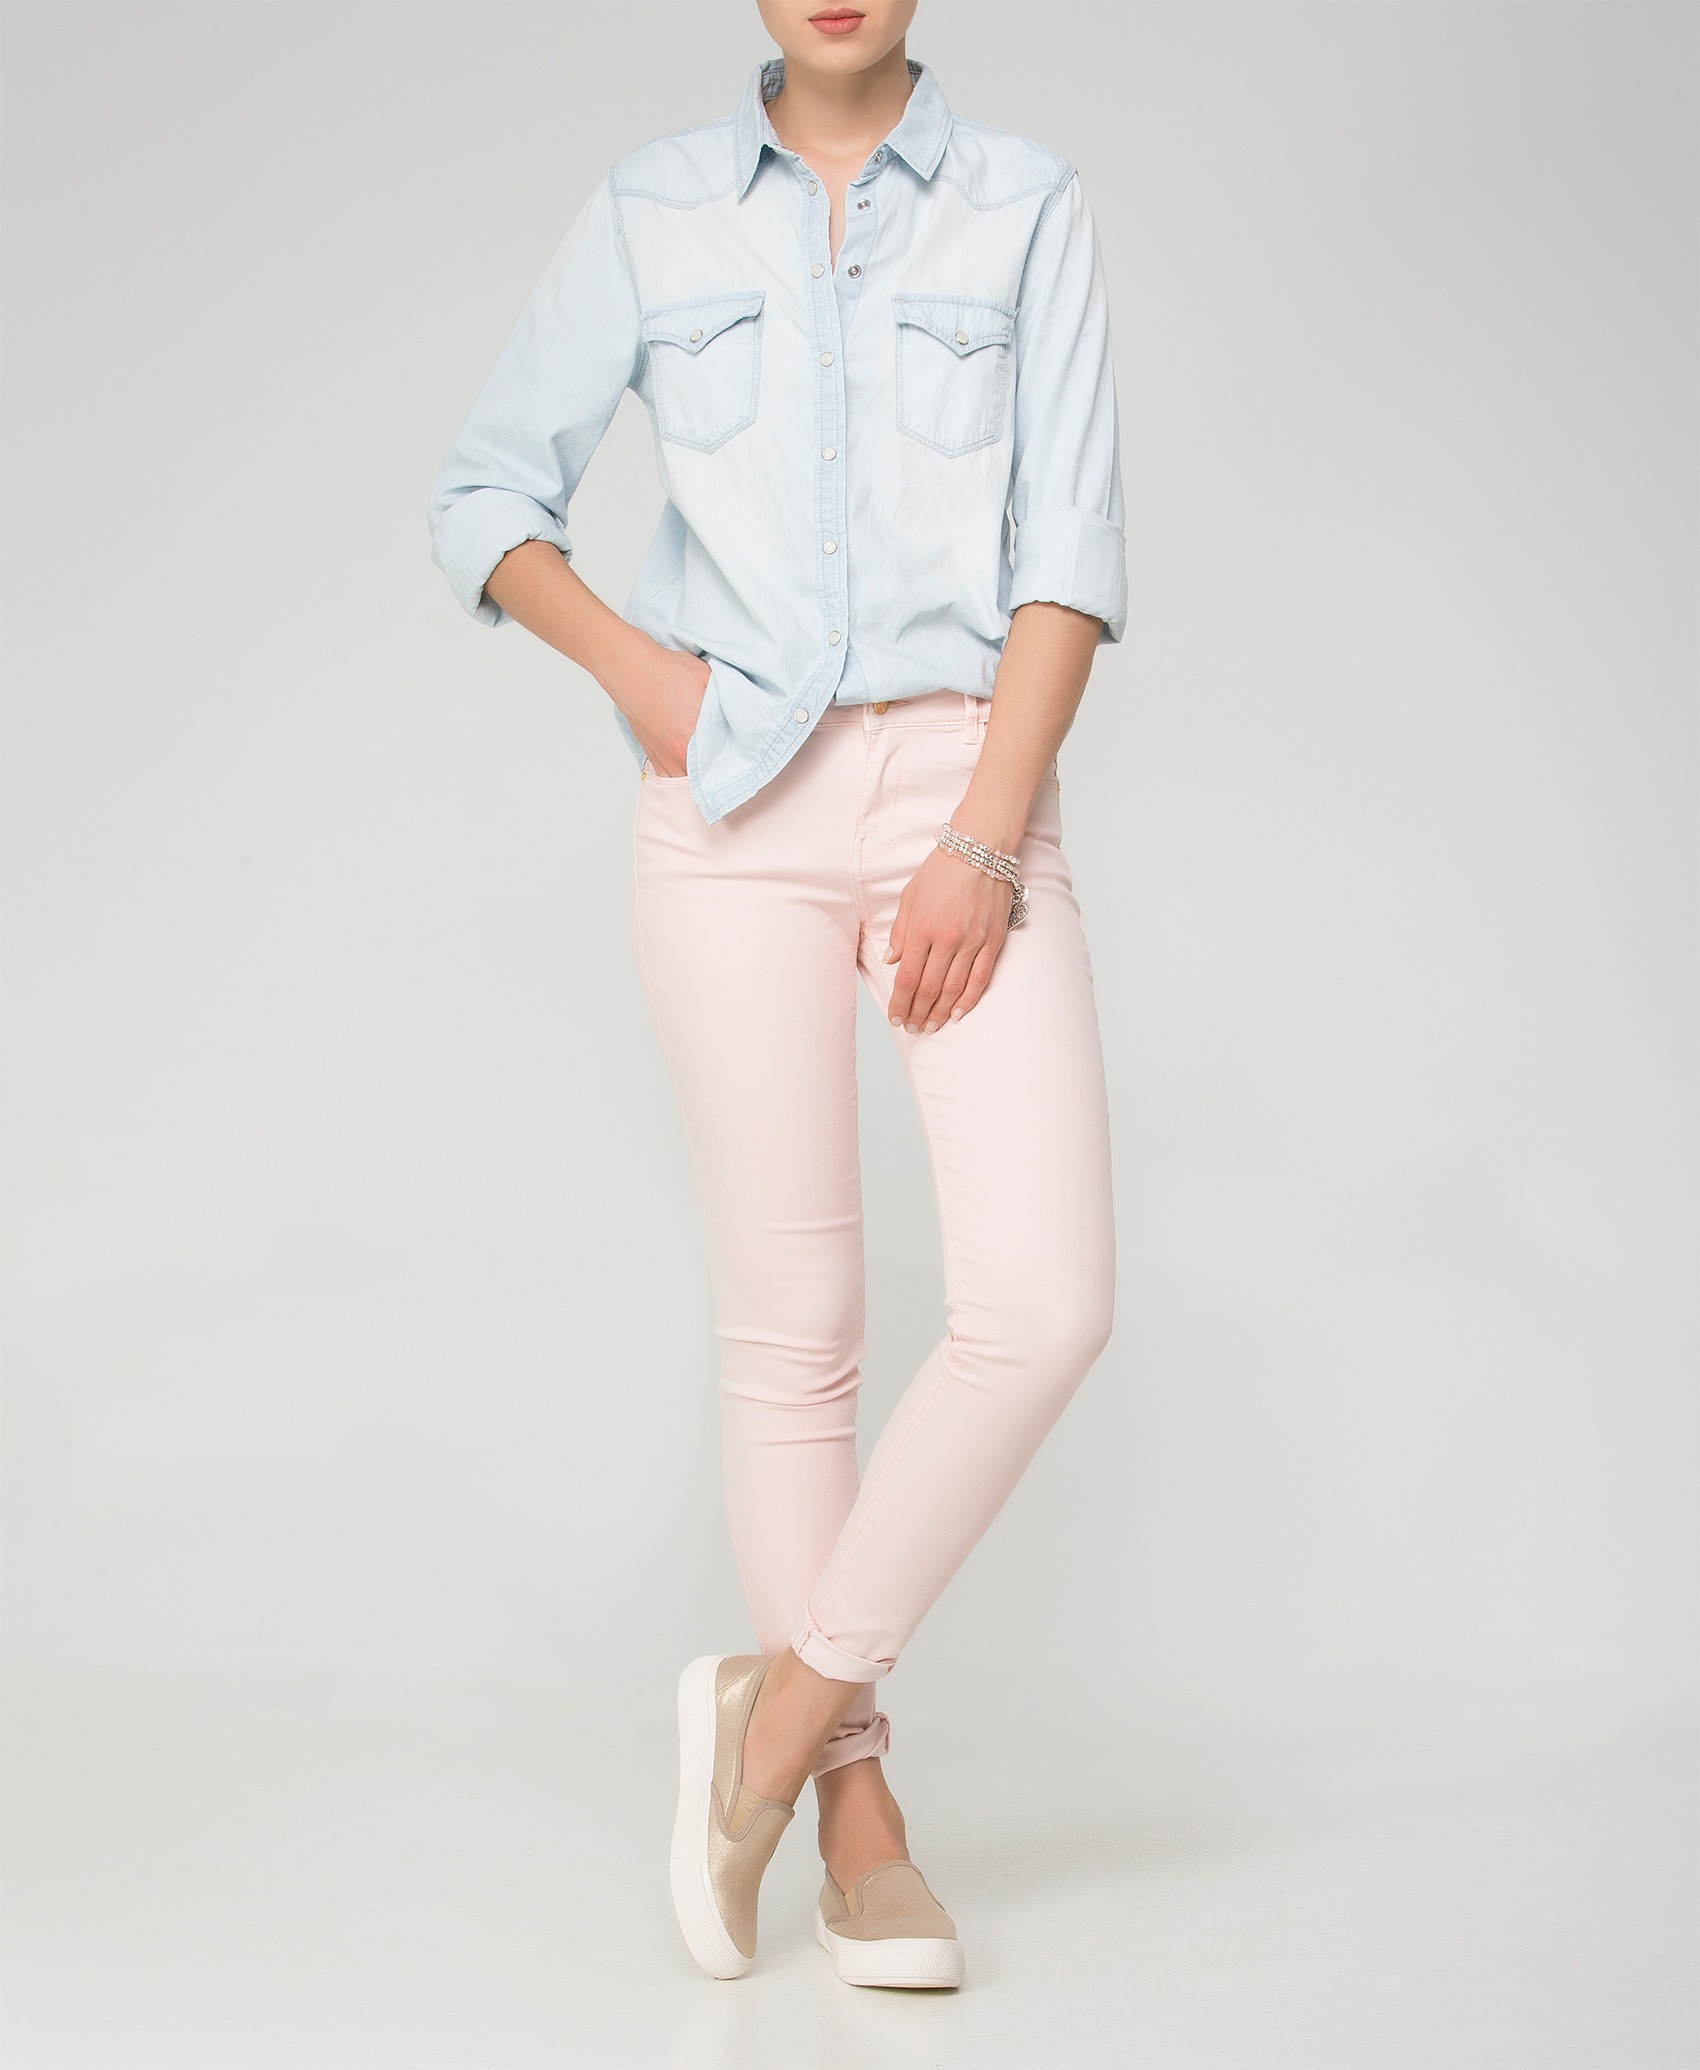 شلوار جین زنانه,شلوار لی 2015,مدل لباس تابستانه,lebas7.mihanblog.com